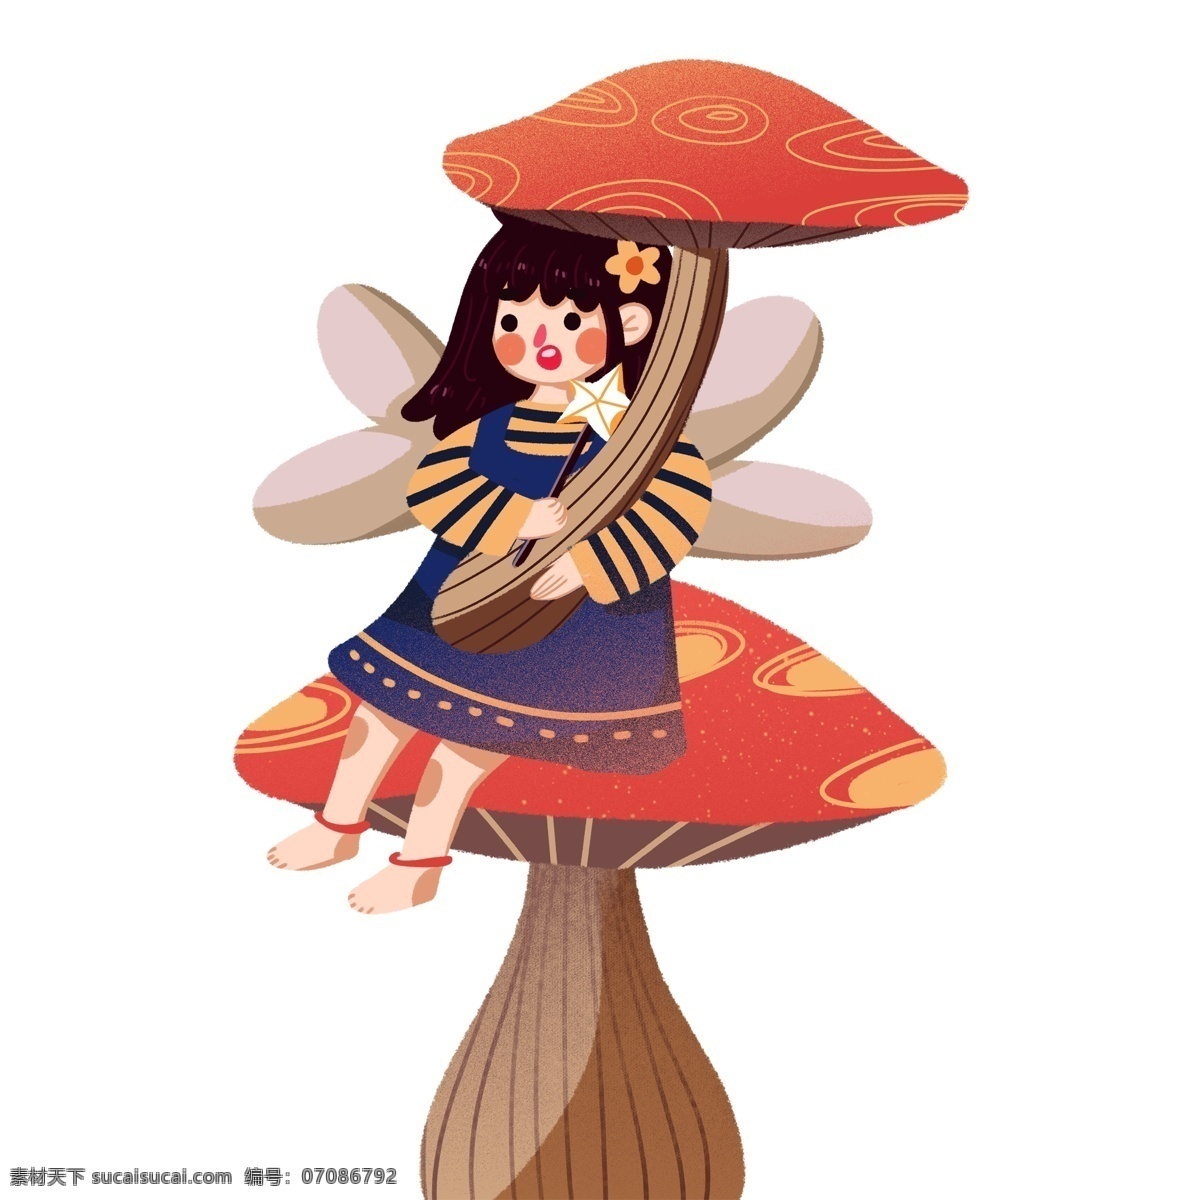 手绘 蘑菇 仙子 图案 女孩 卡通女孩 设计元素 简约 花仙子 蘑菇仙子 装饰图案 元素设计 手绘元素 psd元素